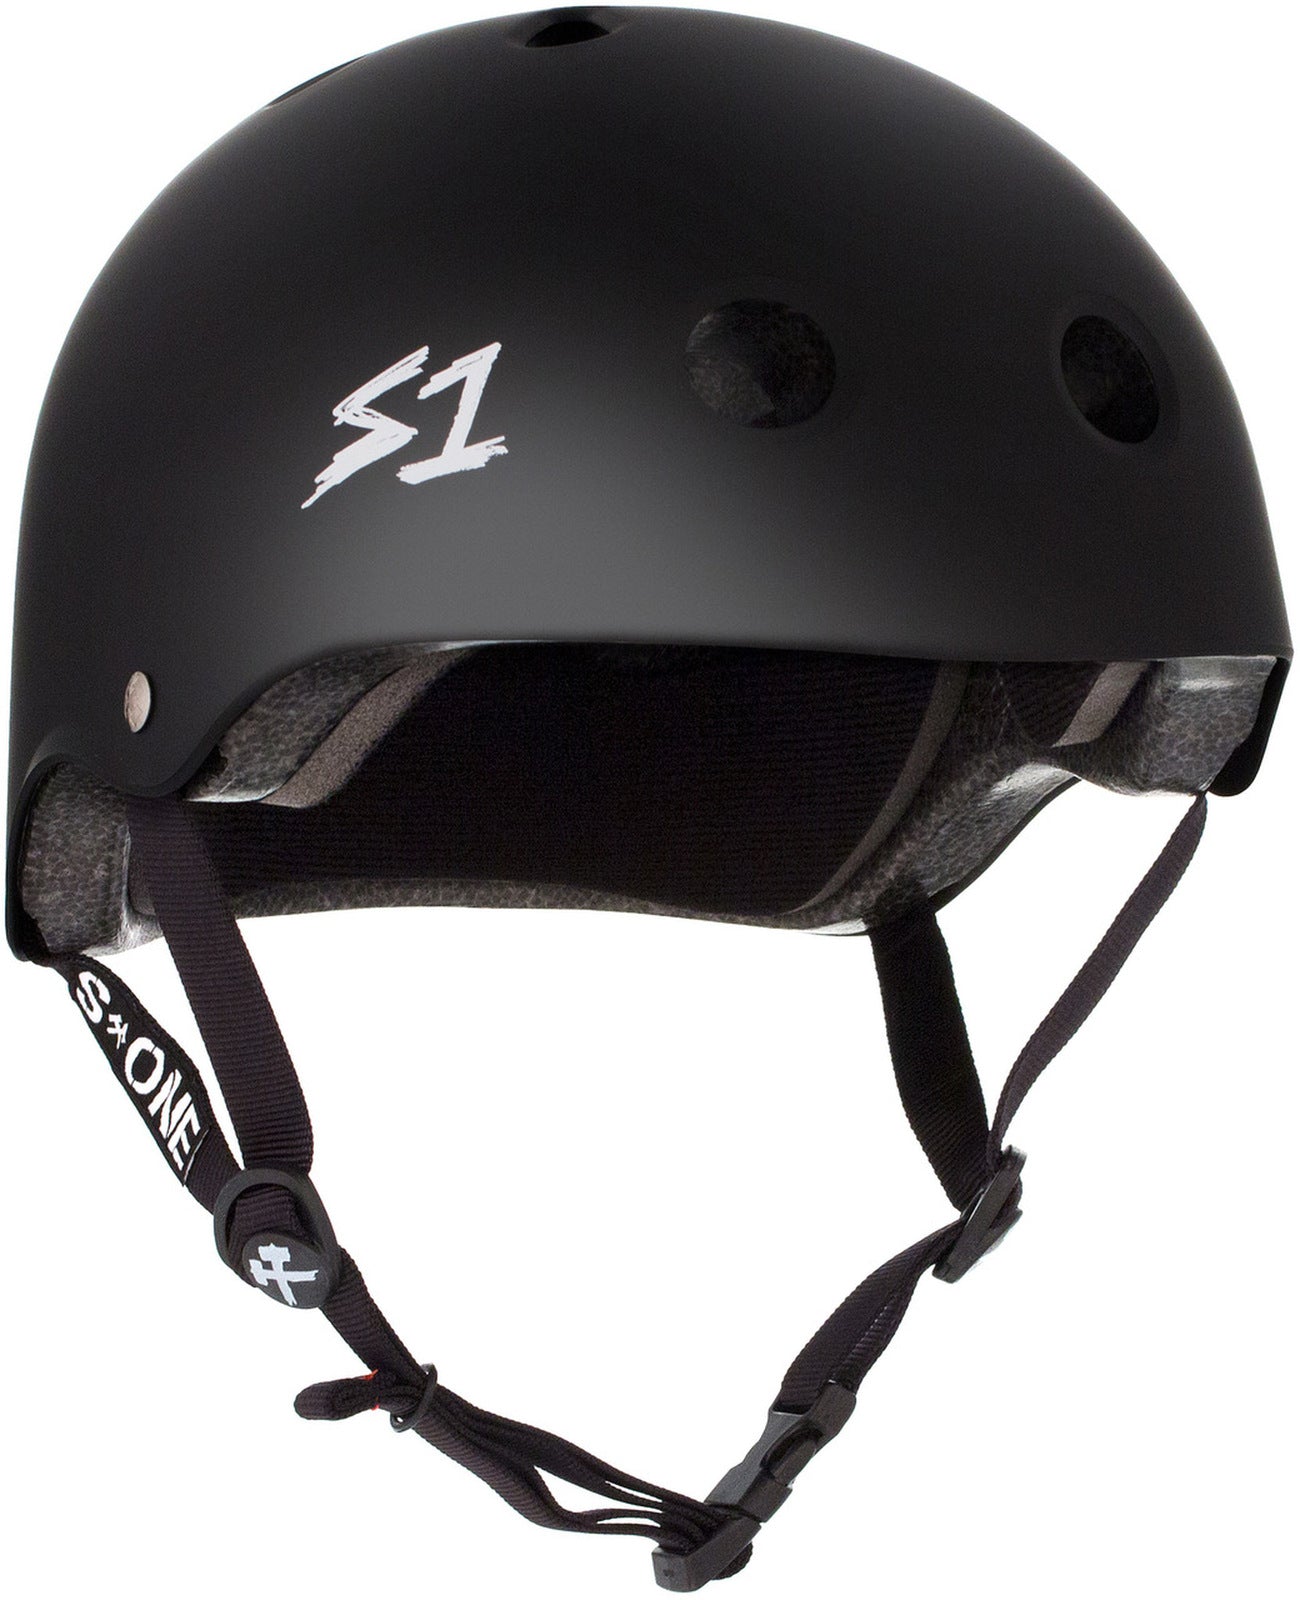 Black Skate Helmets